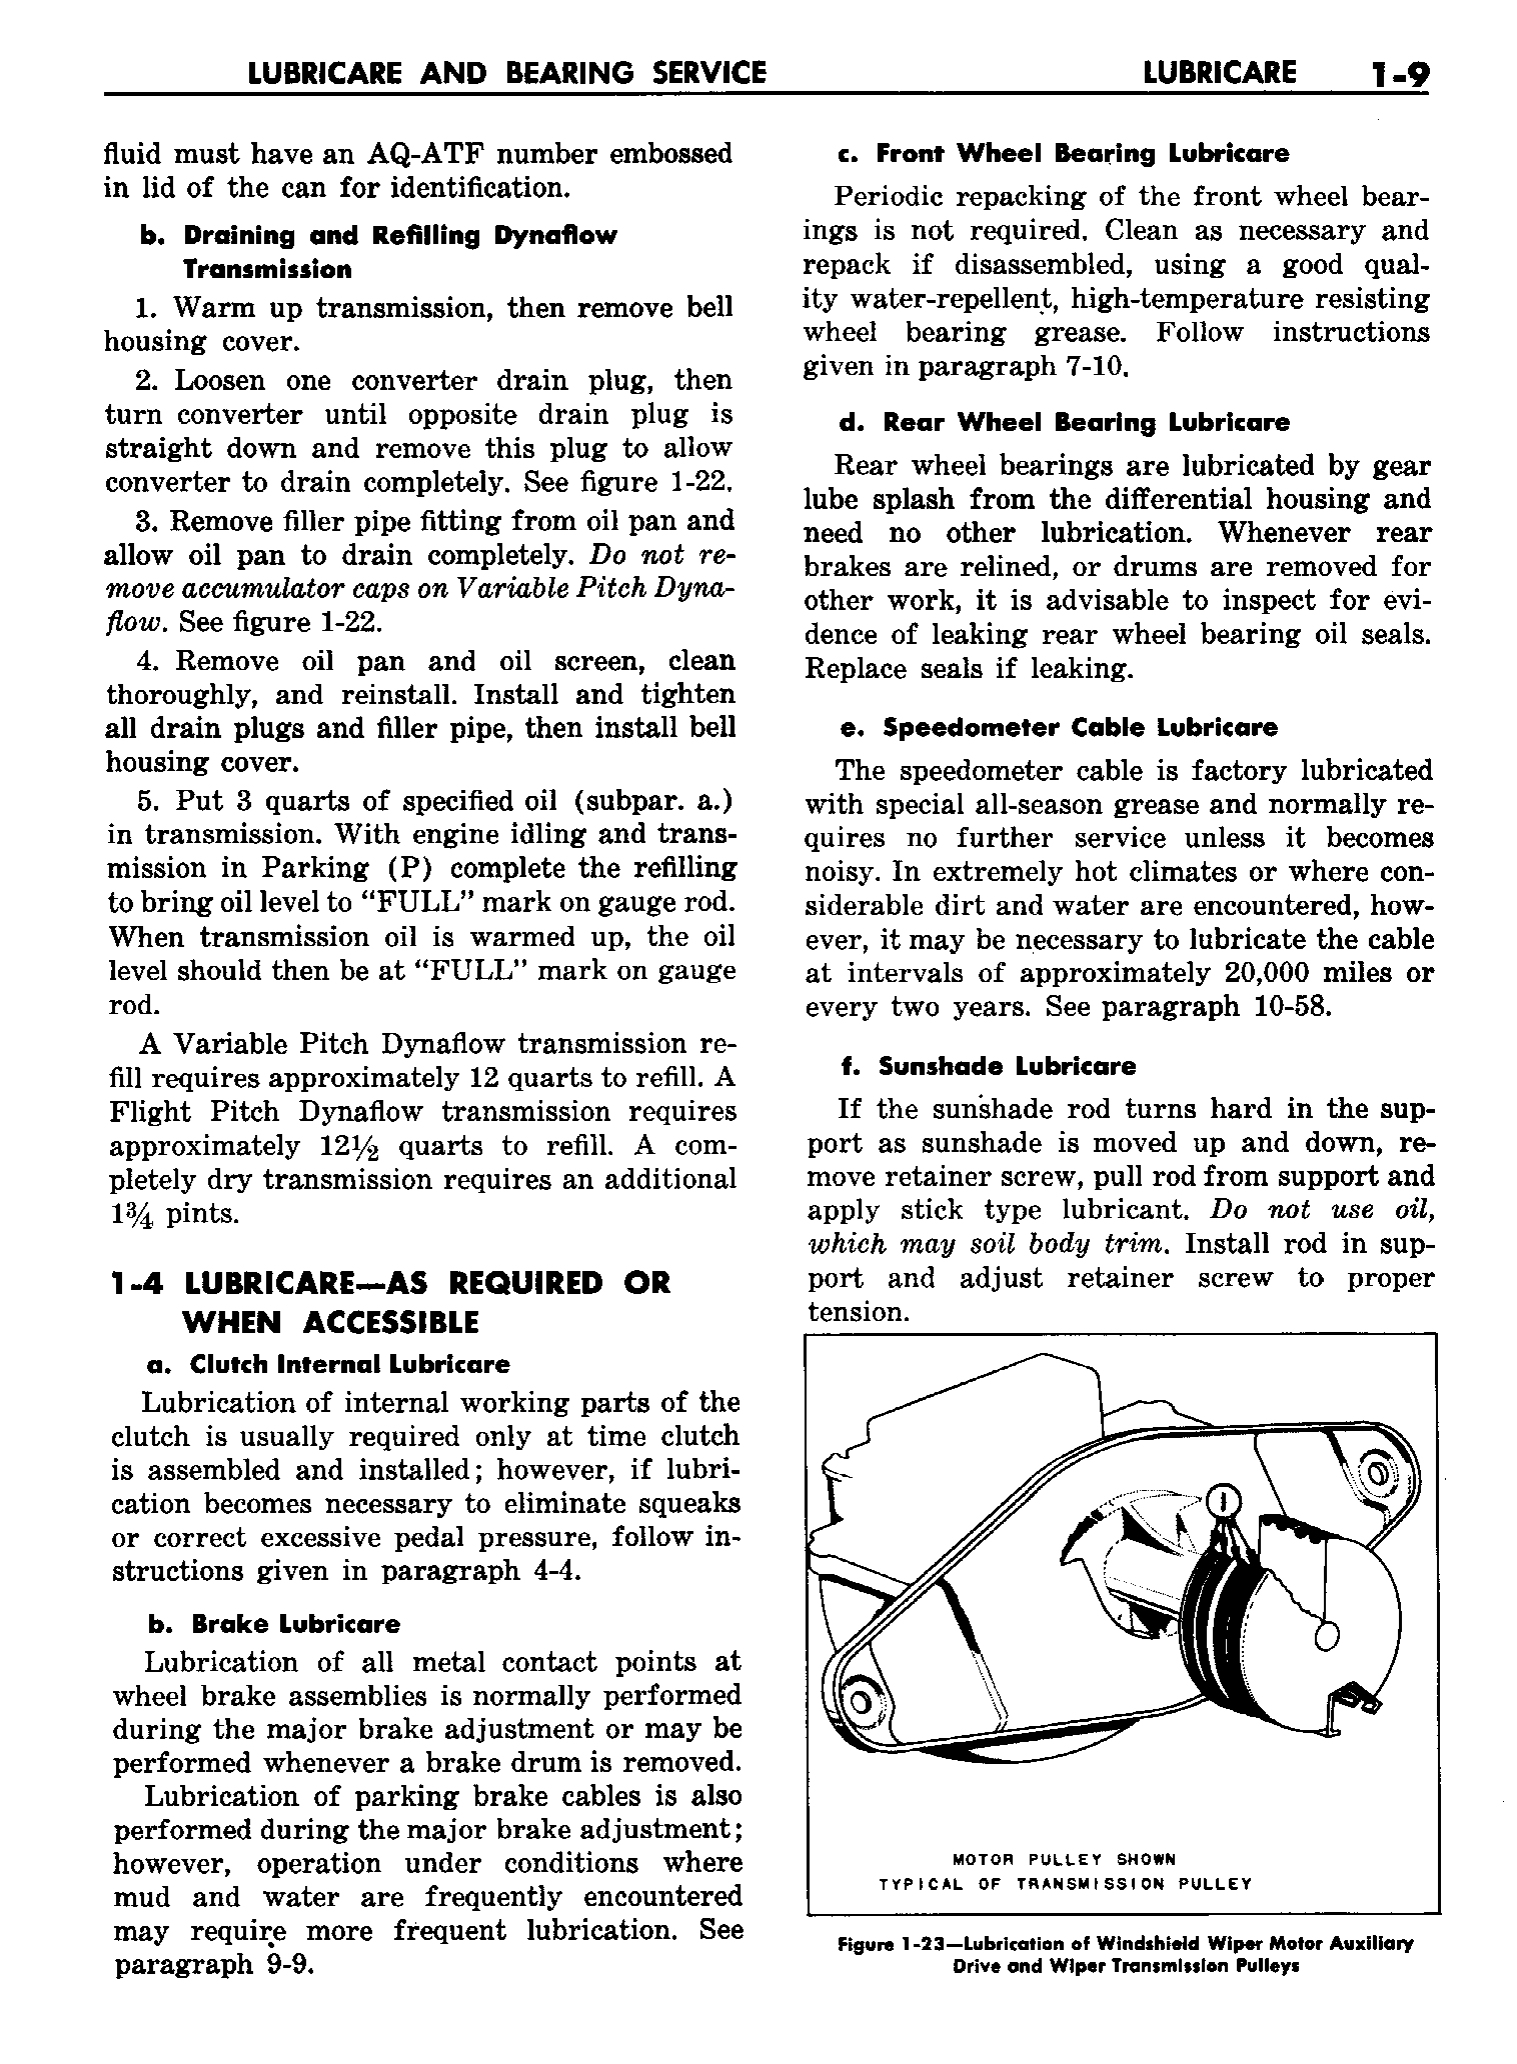 n_02 1958 Buick Shop Manual - Lubricare_9.jpg